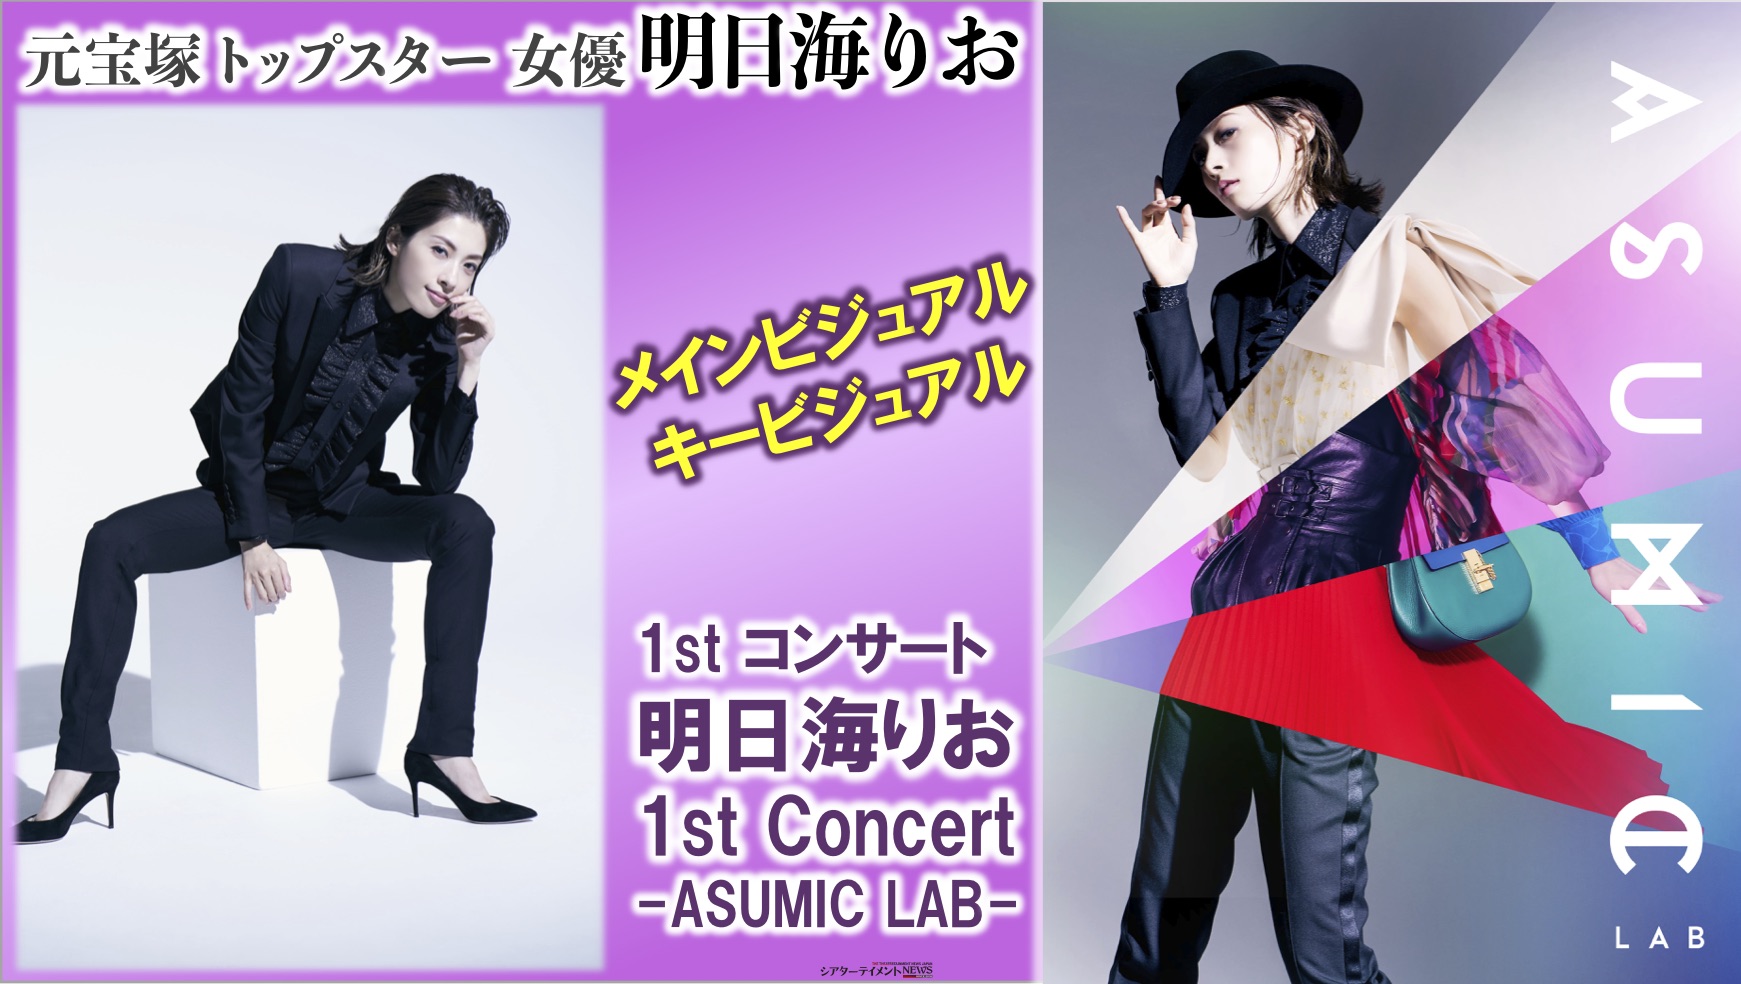 明日海りお ファーストコンサート ASUMIC LAB ブルーレイ - DVD/ブルーレイ